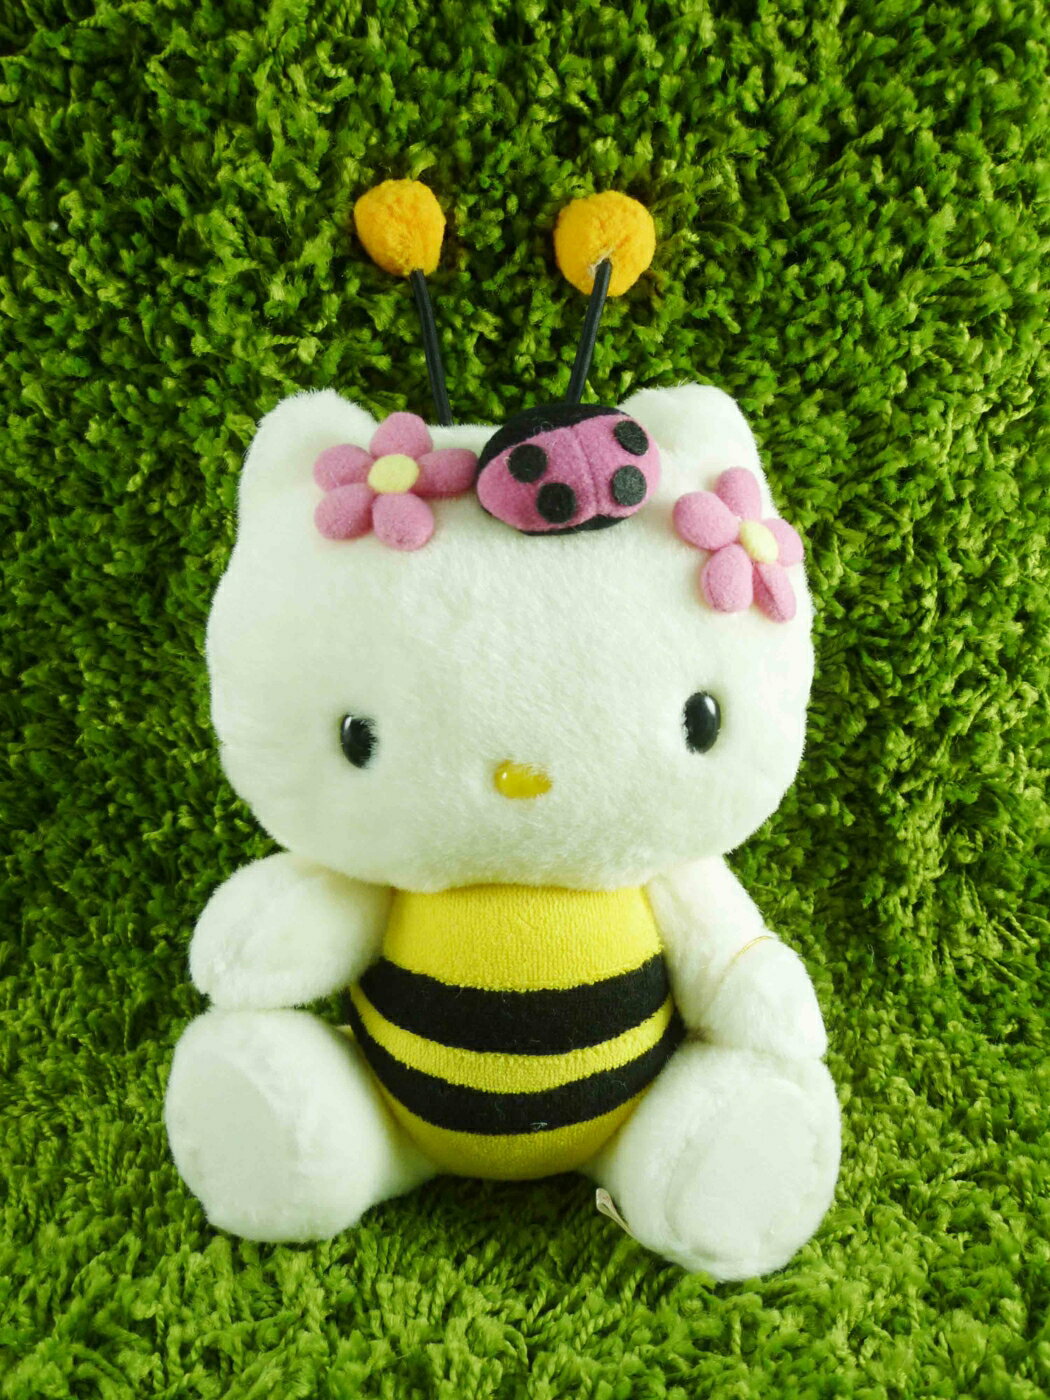 【震撼精品百貨】Hello Kitty 凱蒂貓 KITTY絨毛娃娃-蜜蜂圖案-黃色 震撼日式精品百貨